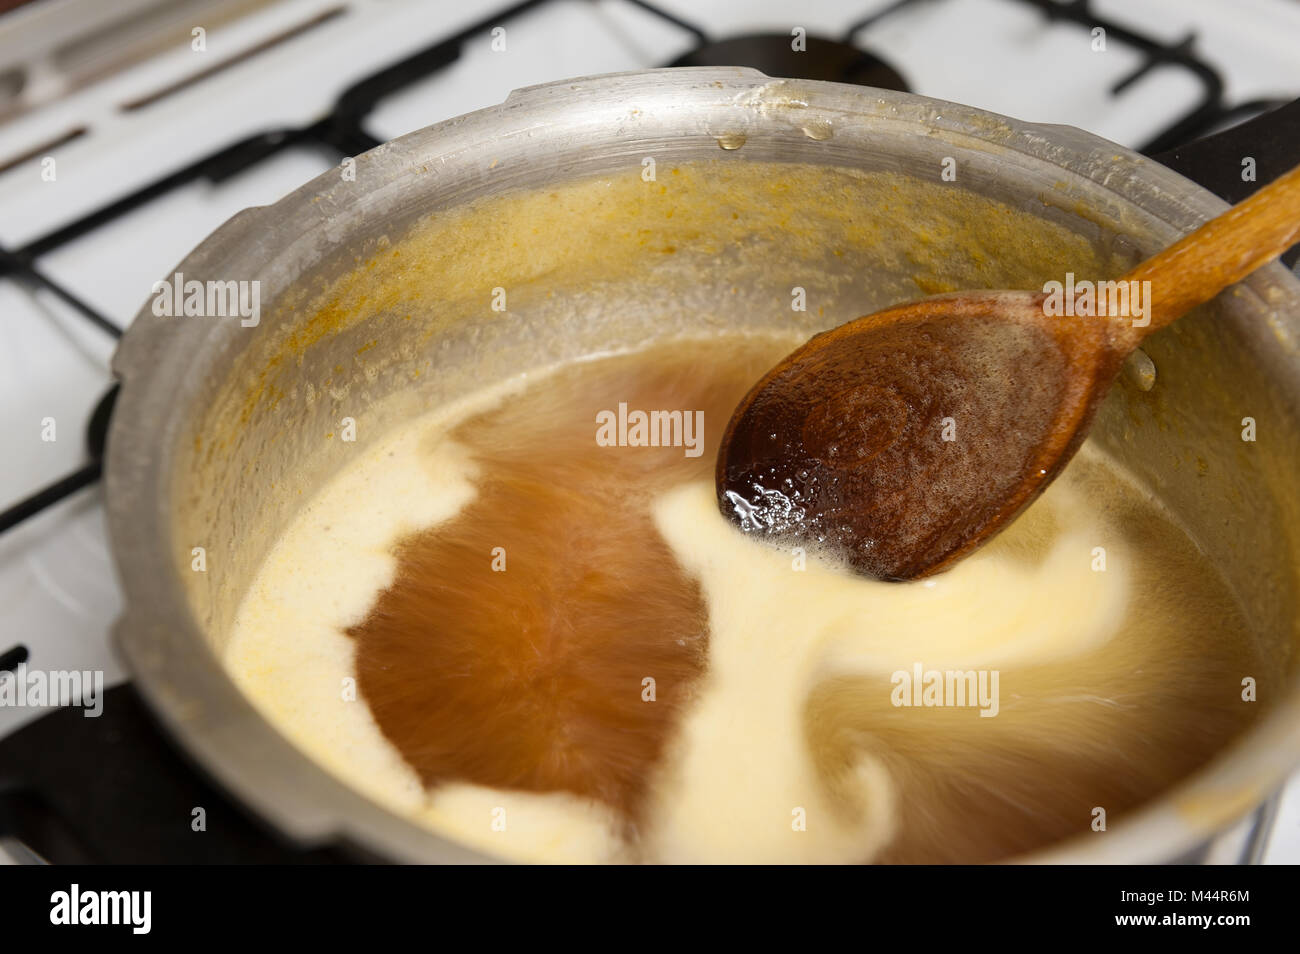 Home gemacht Marmelade mit Saville kochen Orangen, wo es ein hohes Risiko für Zucker jam mix Kochen am Herd Wenn vergessen zu rühren ist Stockfoto